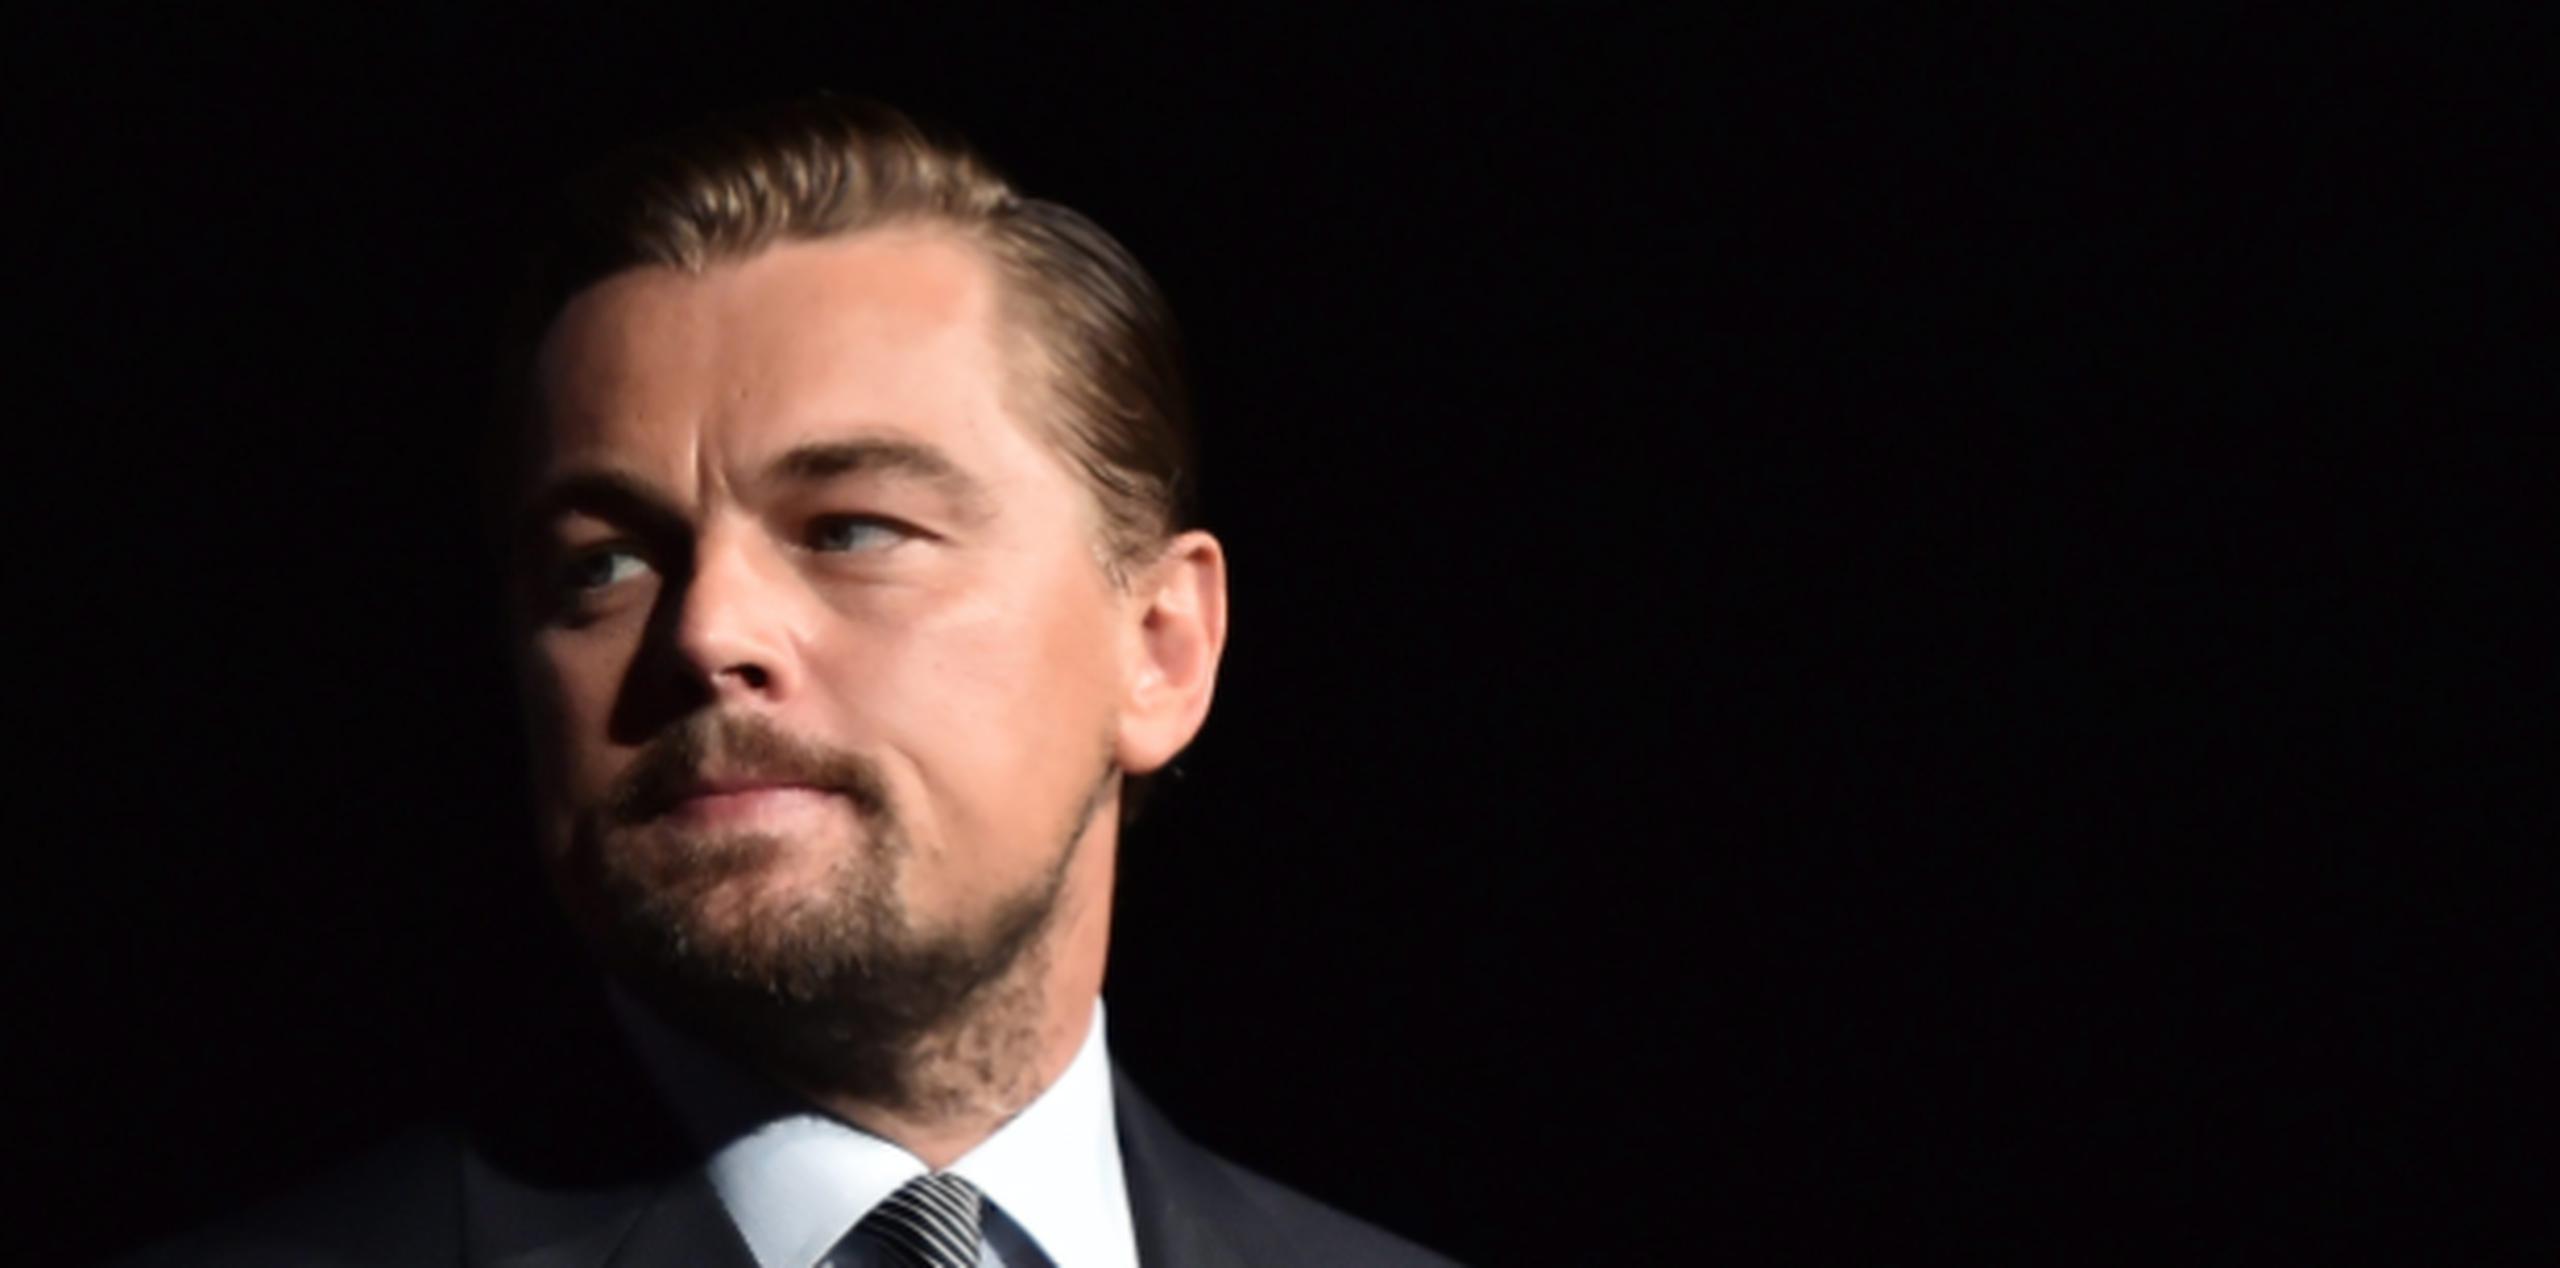 Esta misma semana se anunció que DiCaprio y Paramount unirán esfuerzos para llevar al cine una película basada en la serie de dibujos animados "Captain Planet and the Planeteers". (Archivo)